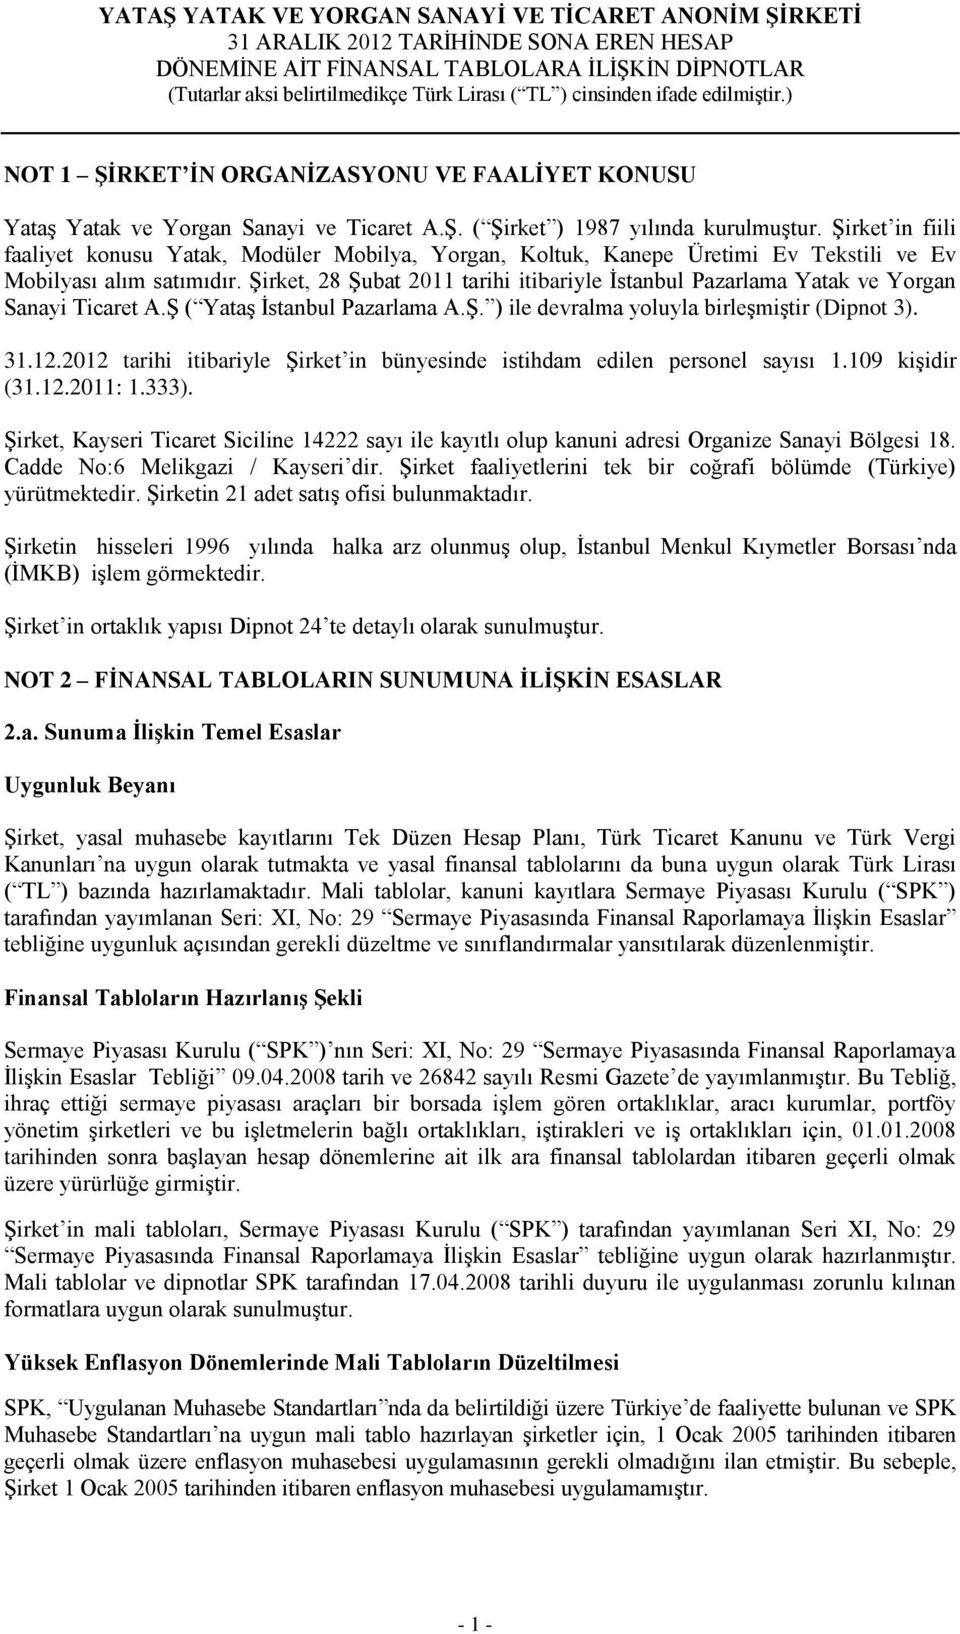 Şirket, 28 Şubat 2011 tarihi itibariyle İstanbul Pazarlama Yatak ve Yorgan Sanayi Ticaret A.Ş ( Yataş İstanbul Pazarlama A.Ş. ) ile devralma yoluyla birleşmiştir (Dipnot 3). 31.12.